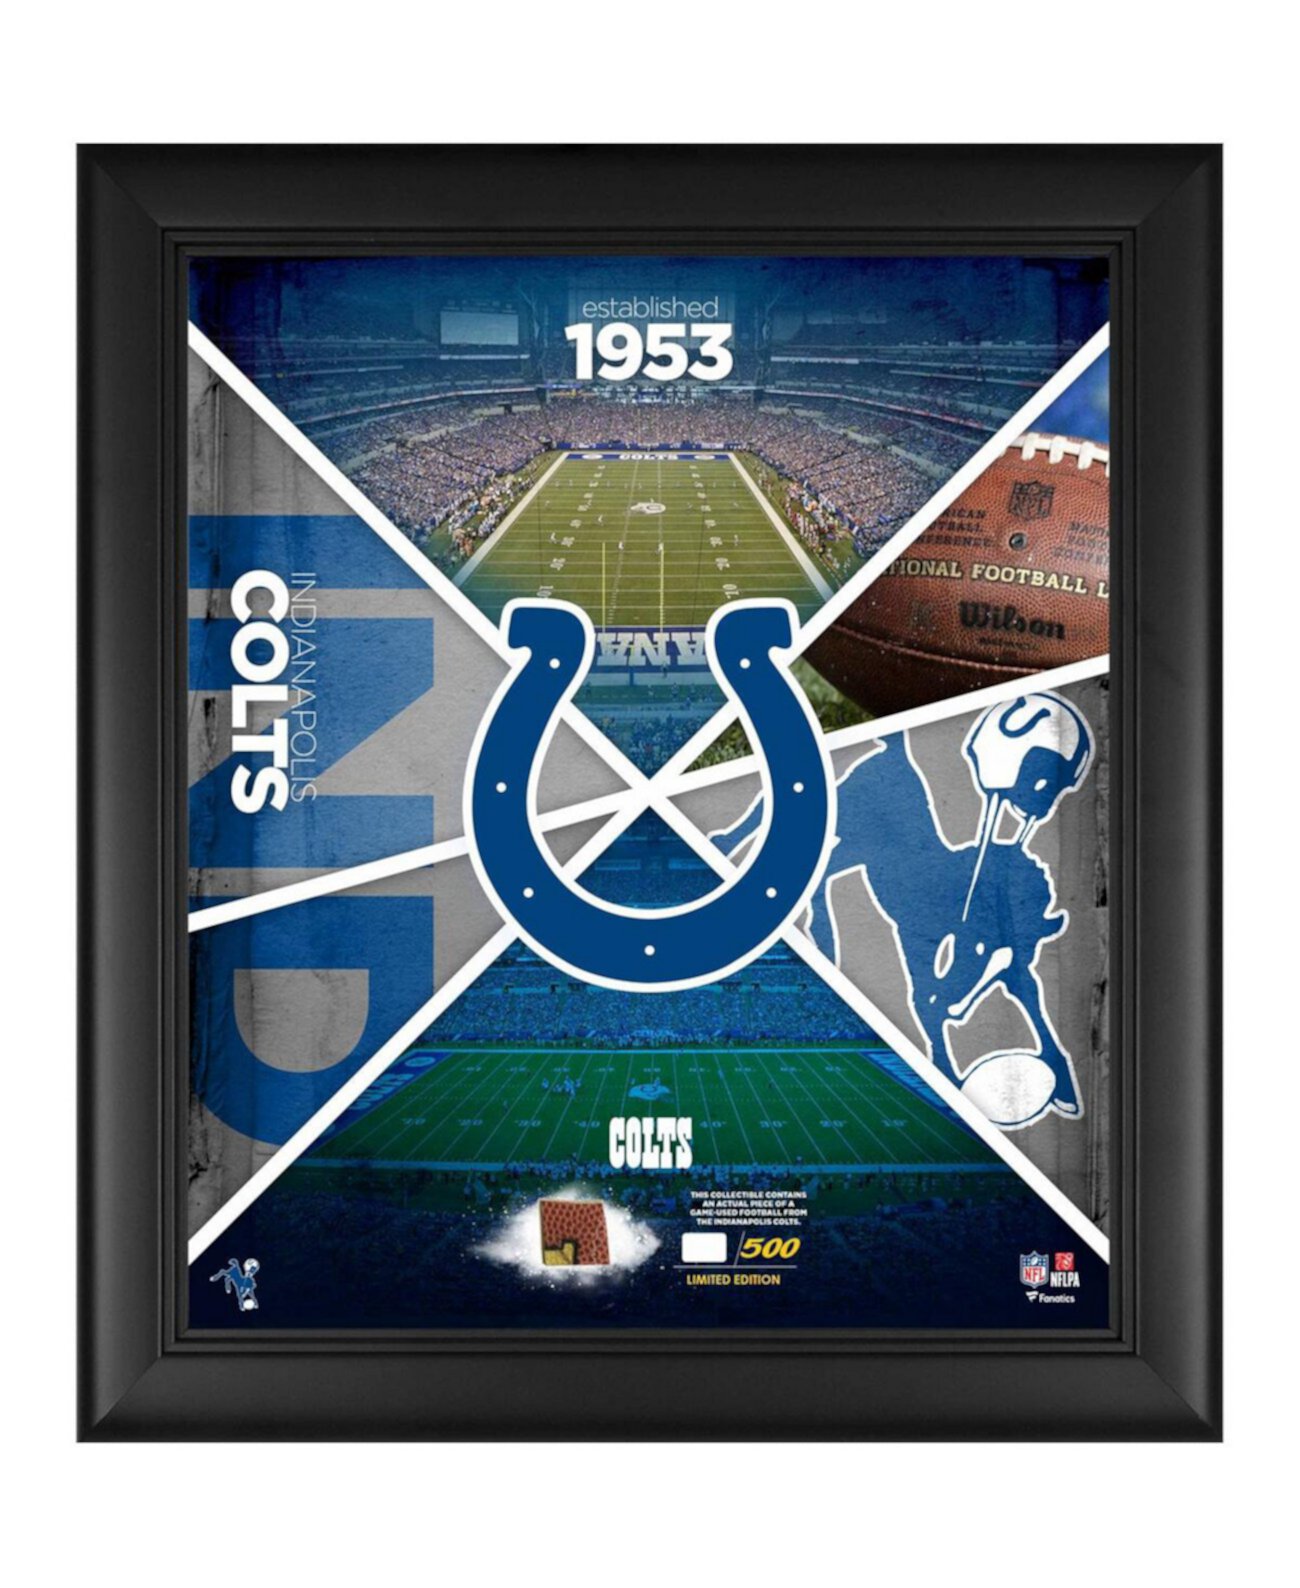 Коллаж Team Impact размером 15 x 17 дюймов в рамке Indianapolis Colts с кусочком игрового футбольного мяча — ограниченная серия из 500 экземпляров Fanatics Authentic